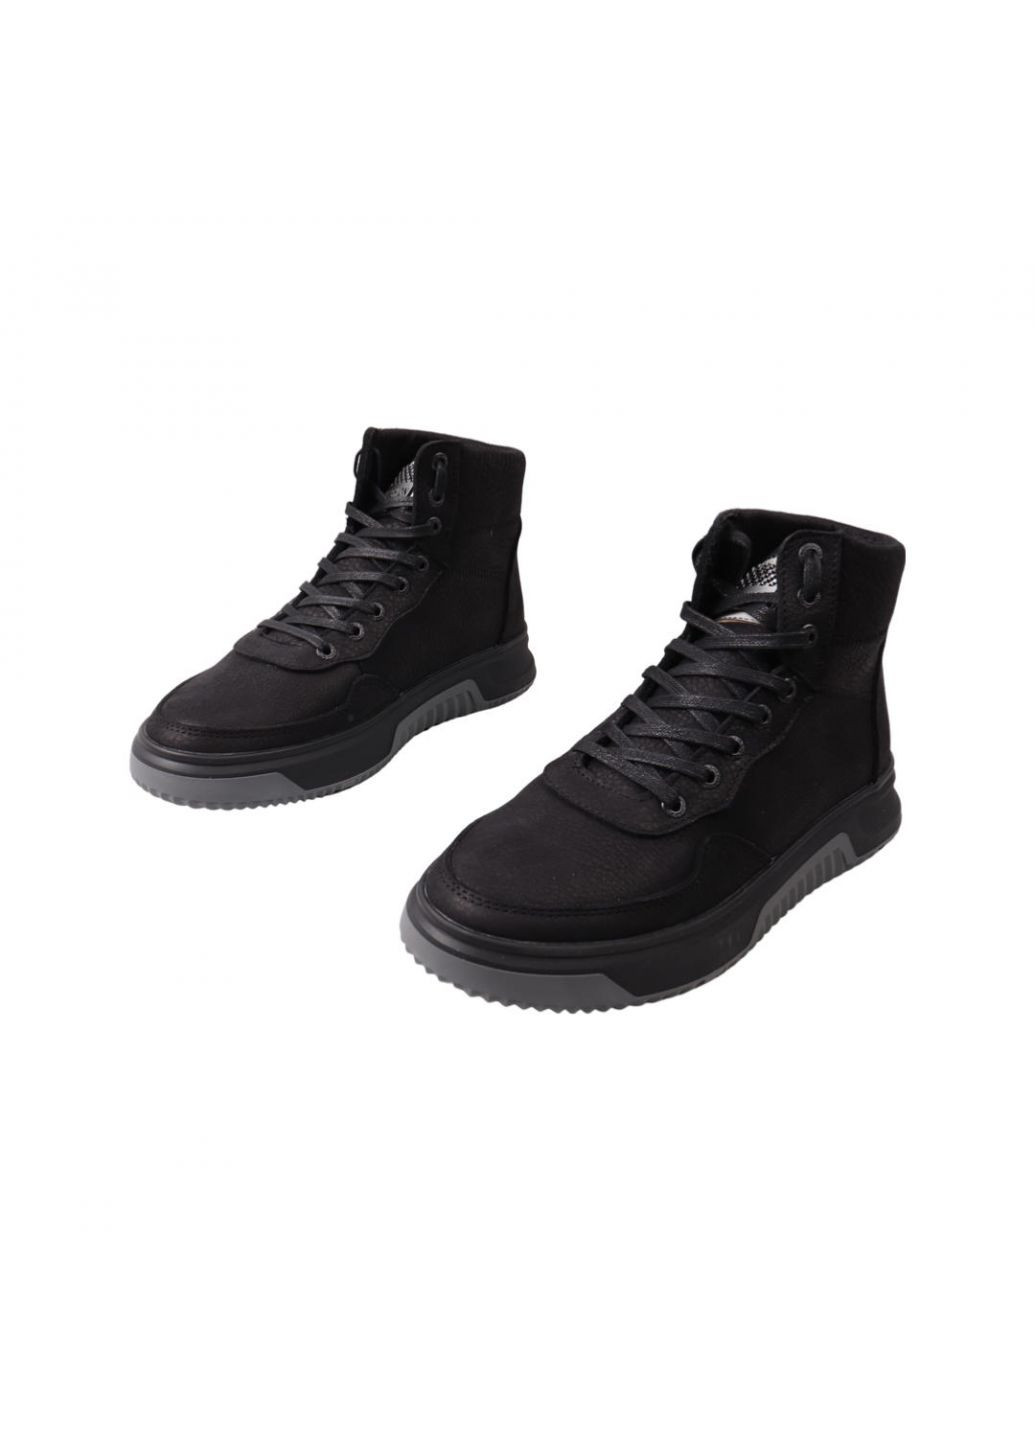 Черные ботинки мужские черные нубук Visazh